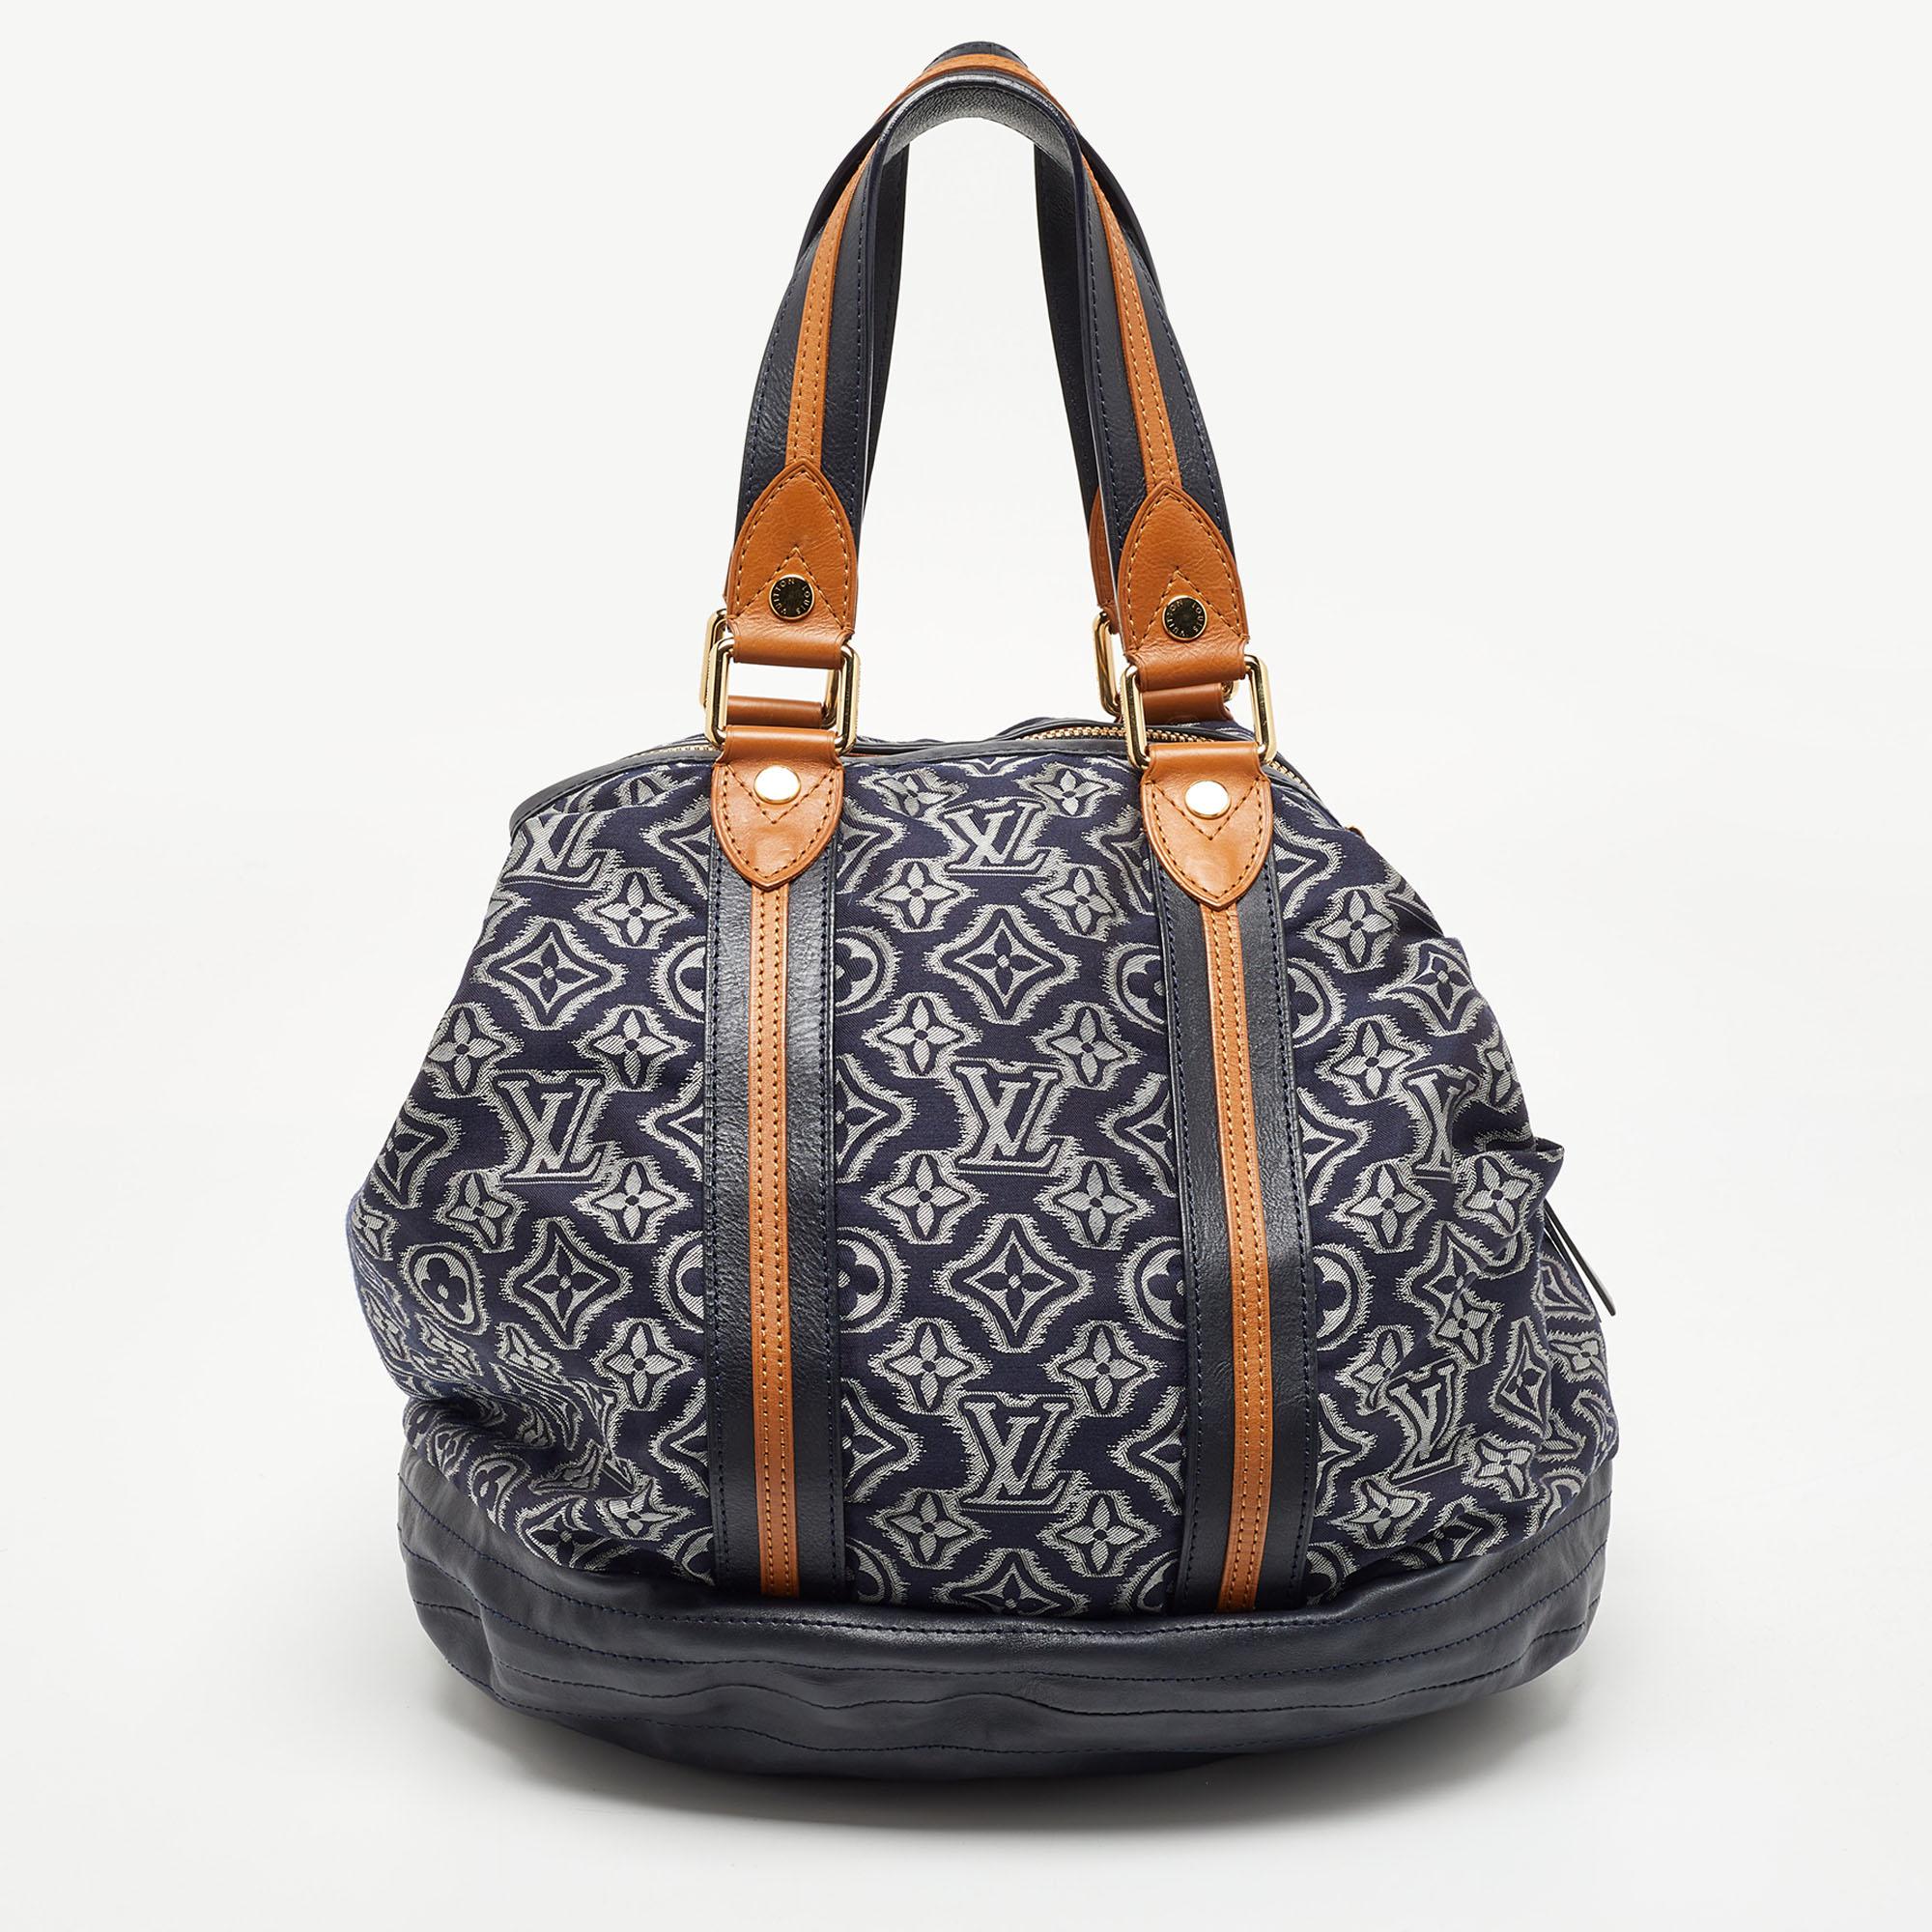 Die Handtaschen von Louis Vuitton sind wegen ihres hohen Stils und ihrer Funktionalität beliebt. Diese Tasche ist, wie alle ihre Designs, langlebig und stilvoll. Die Tasche ist fein verarbeitet und bietet ein luxuriöses Erlebnis. Der Innenraum